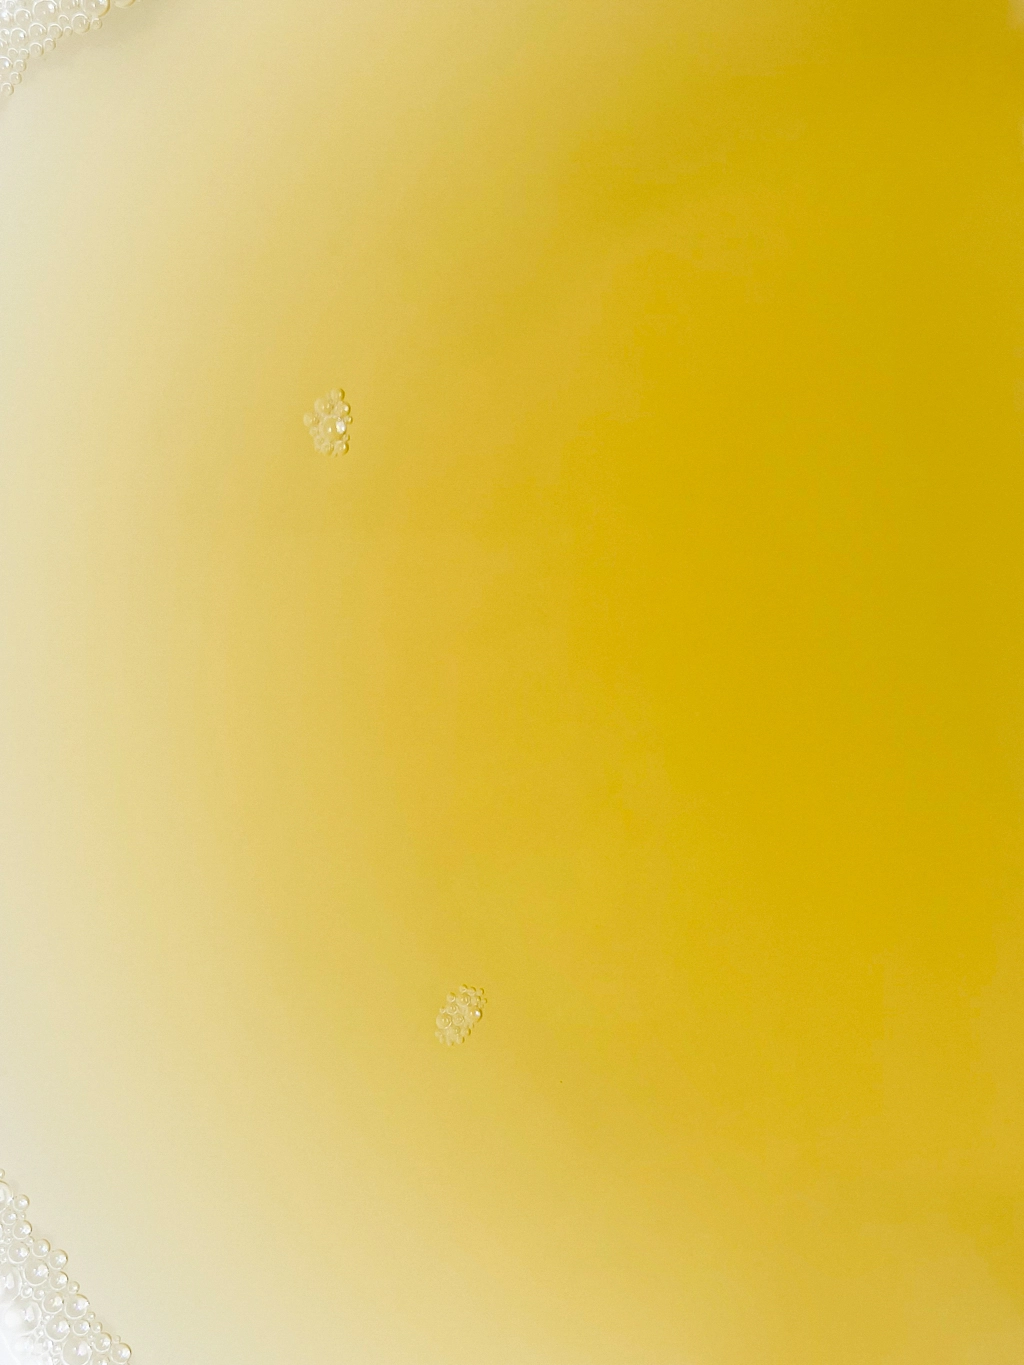 鮪節でとった出汁をクローズアップで捉えた作品。色は濃い黄色と薄い黄色の美しいグラデーションで、ところどころに細かい泡が見える。